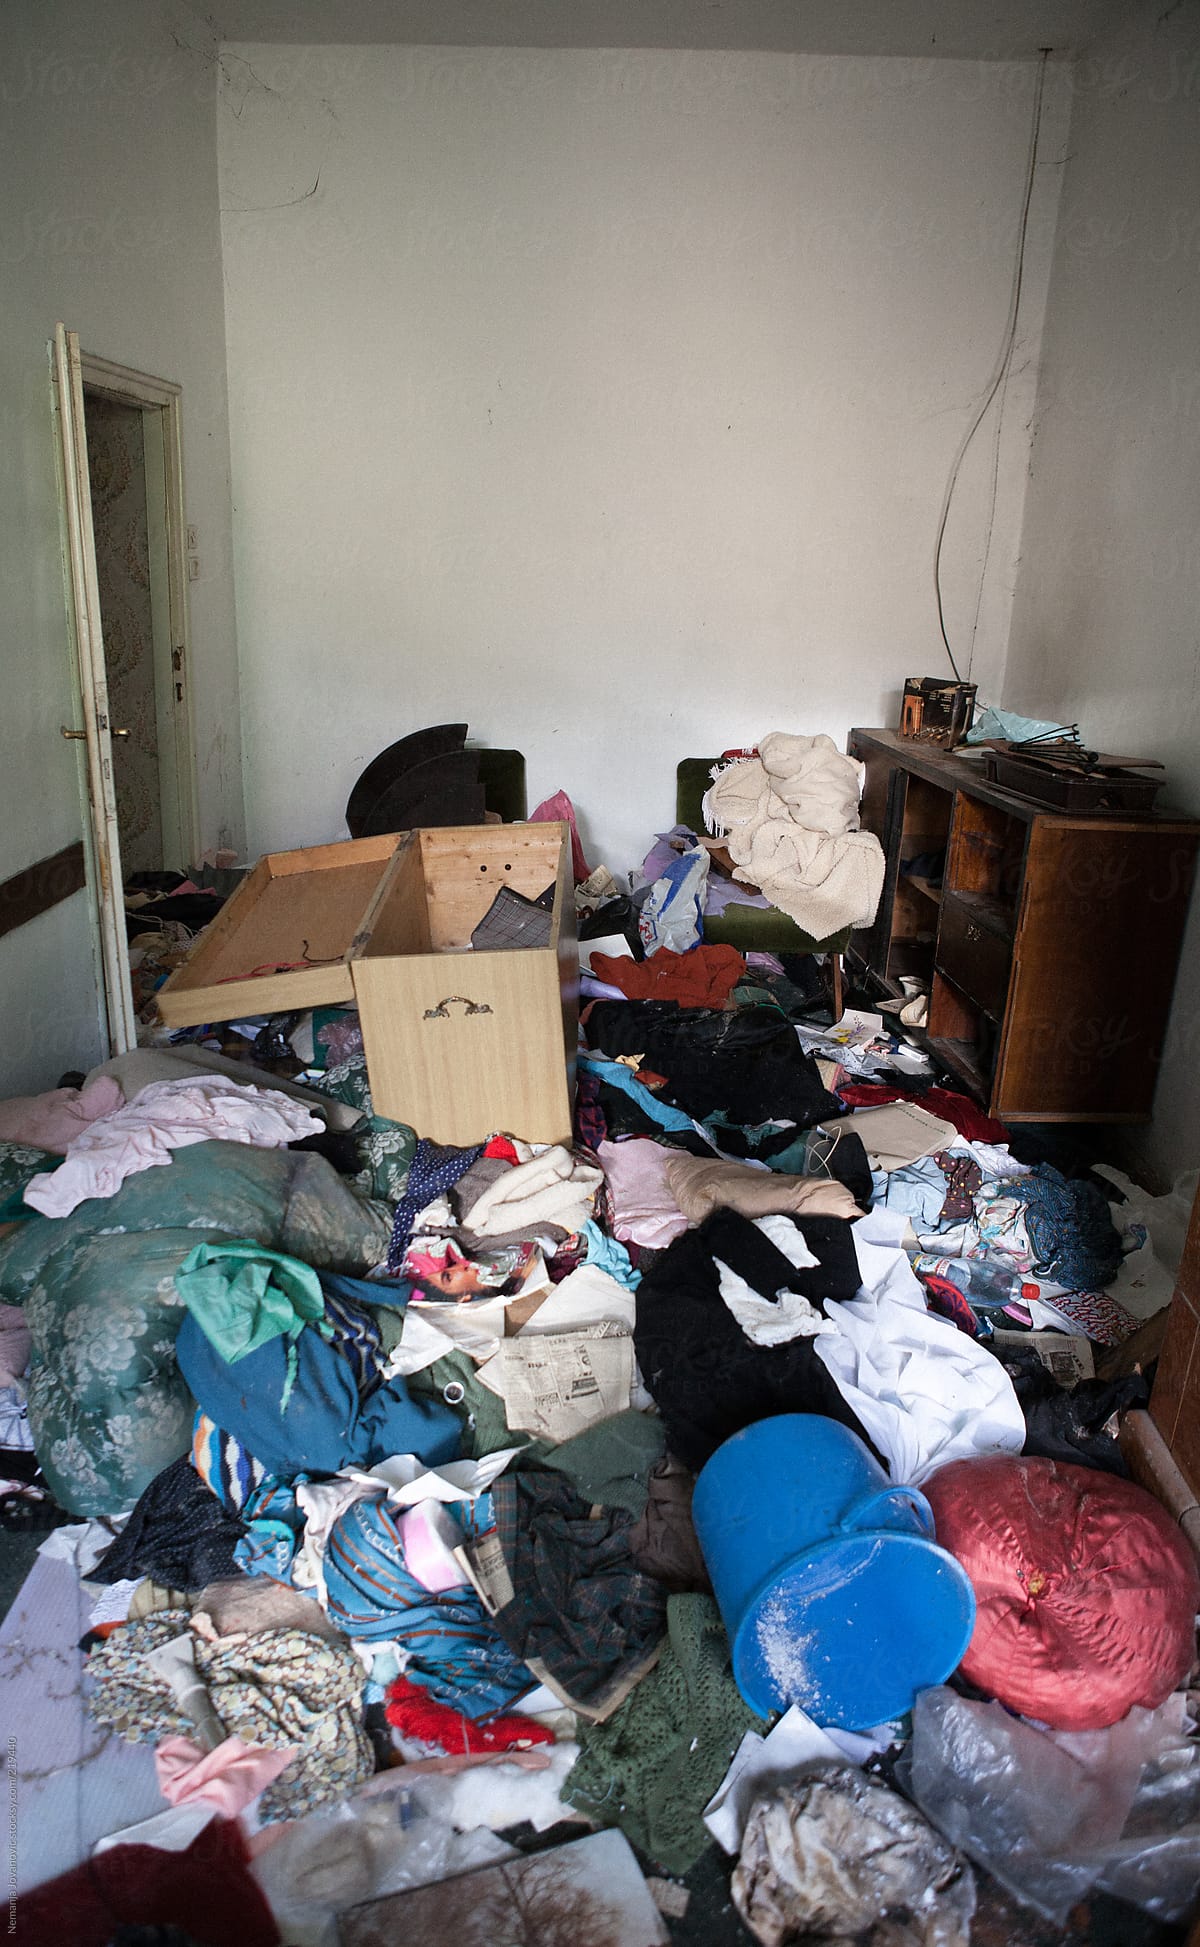 trashed room